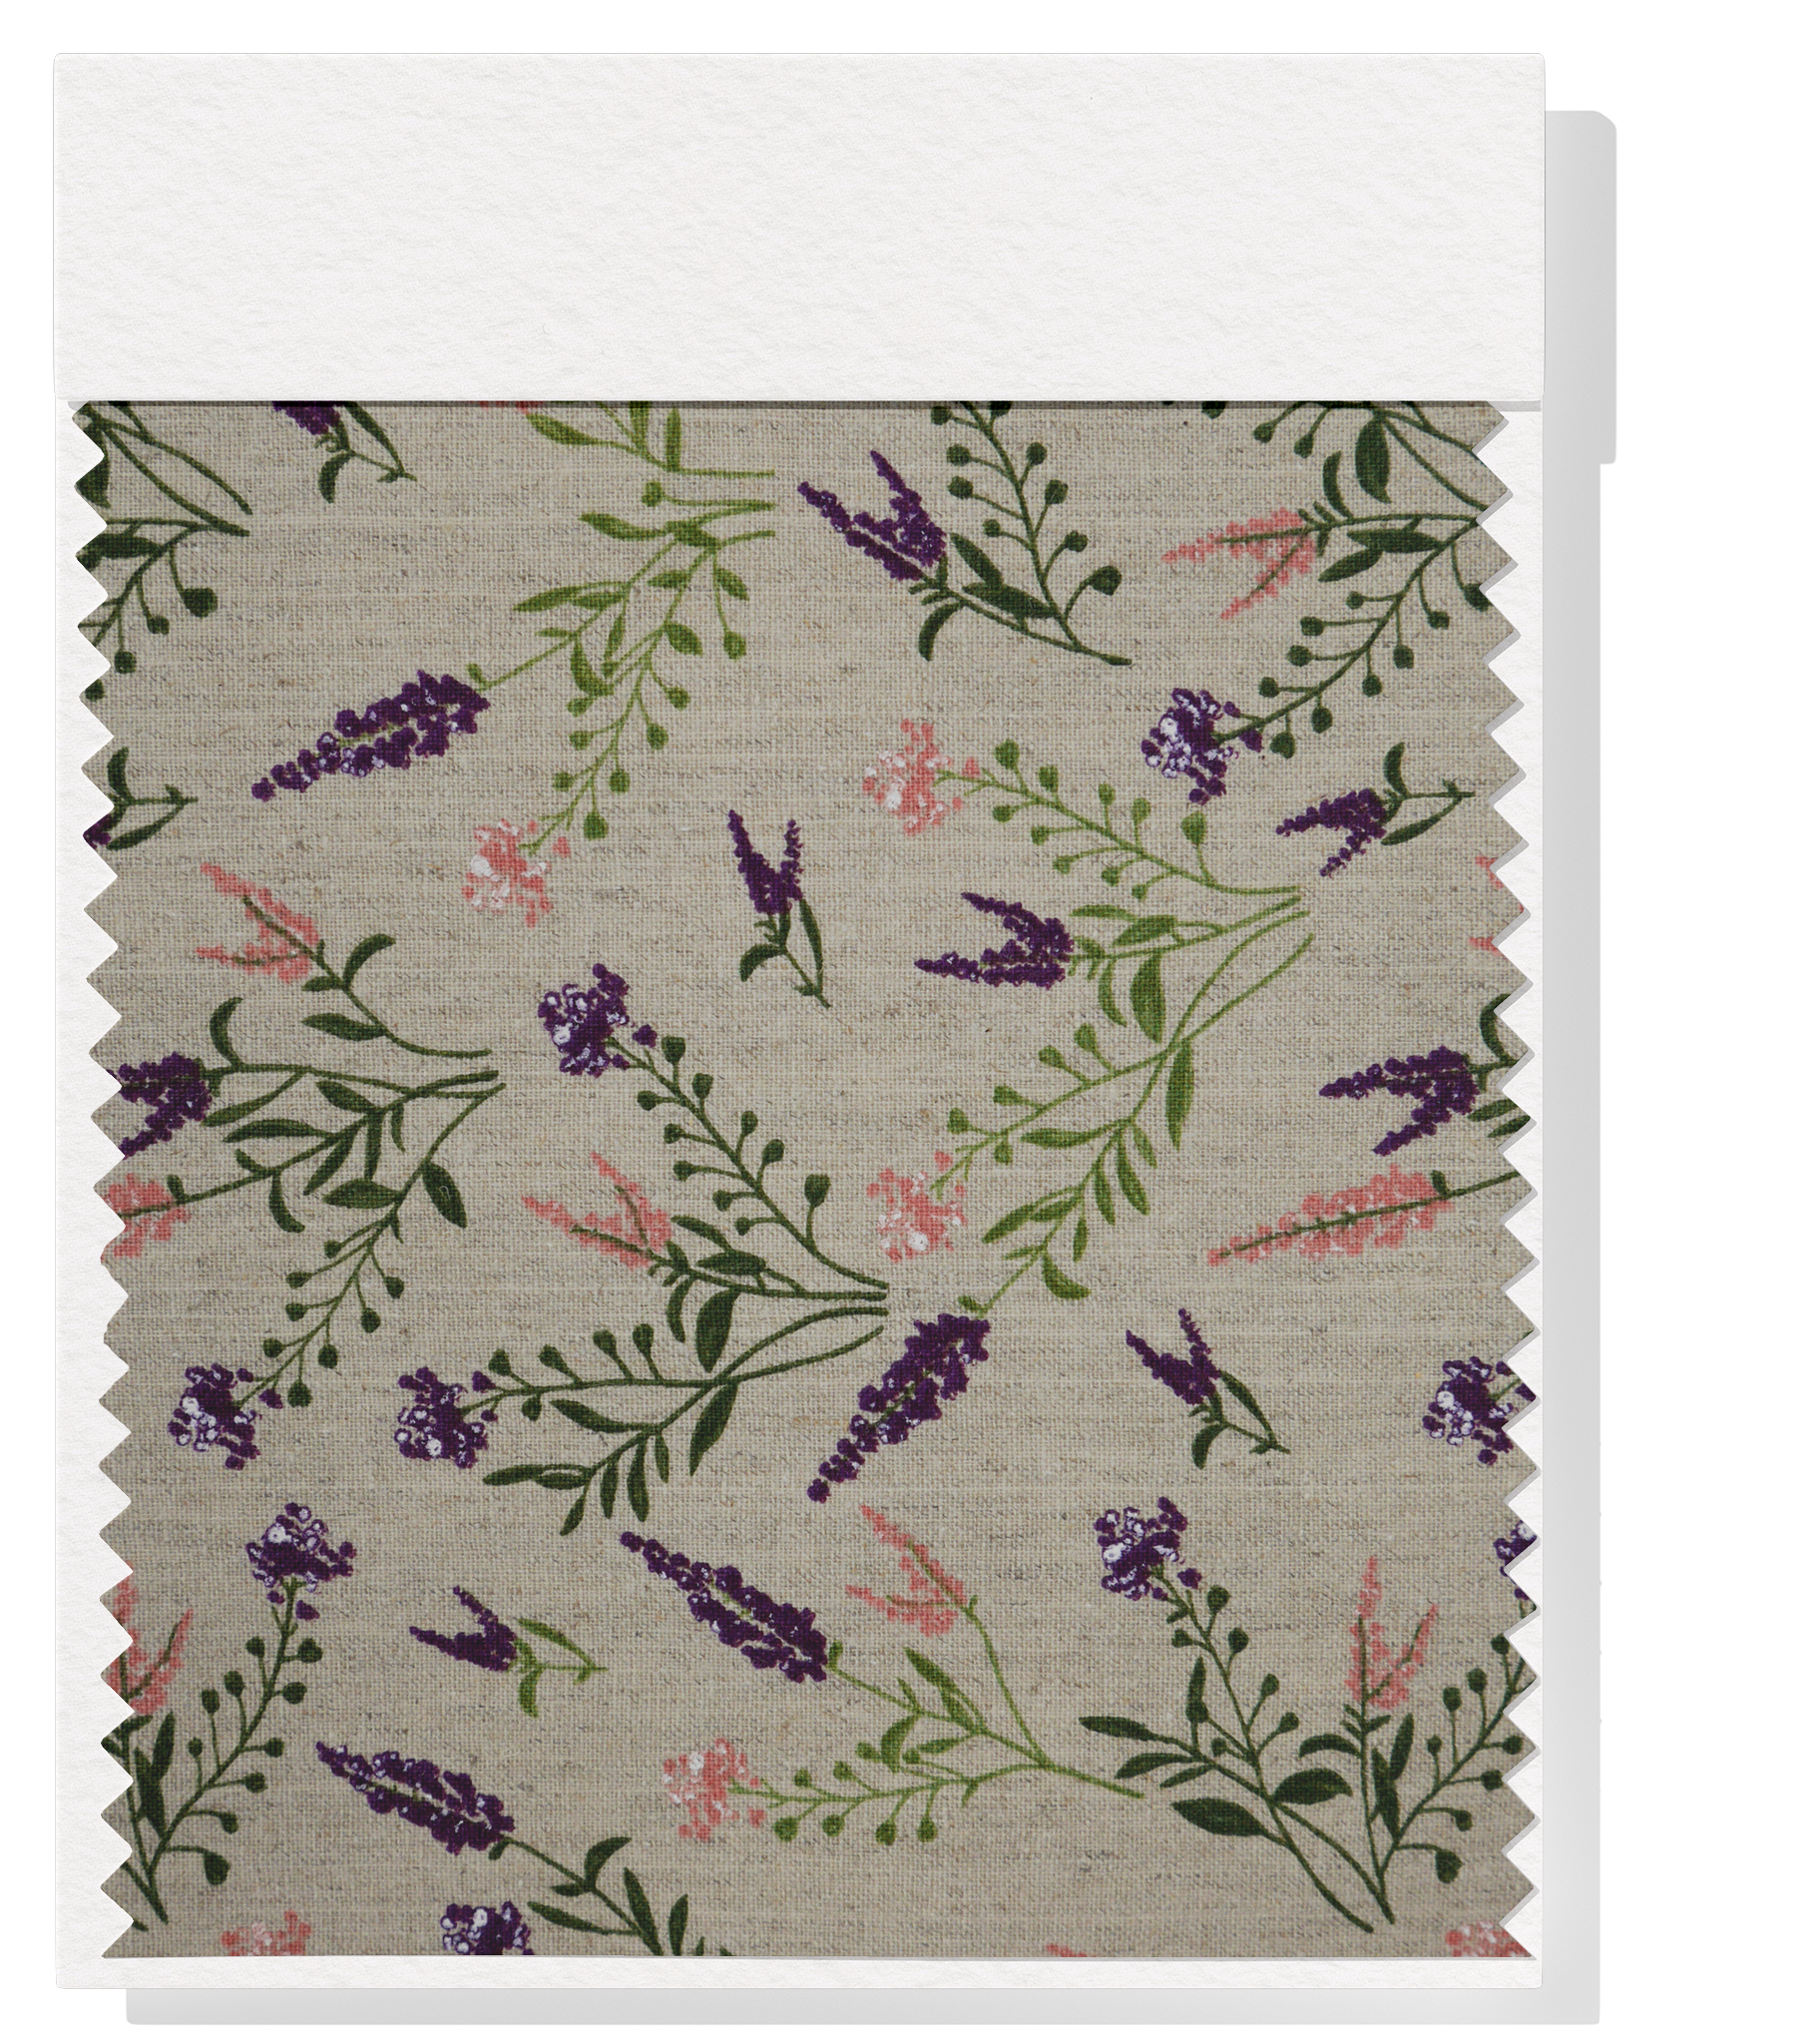 Printed Linen / Cotton $28.00p/m - Lavender